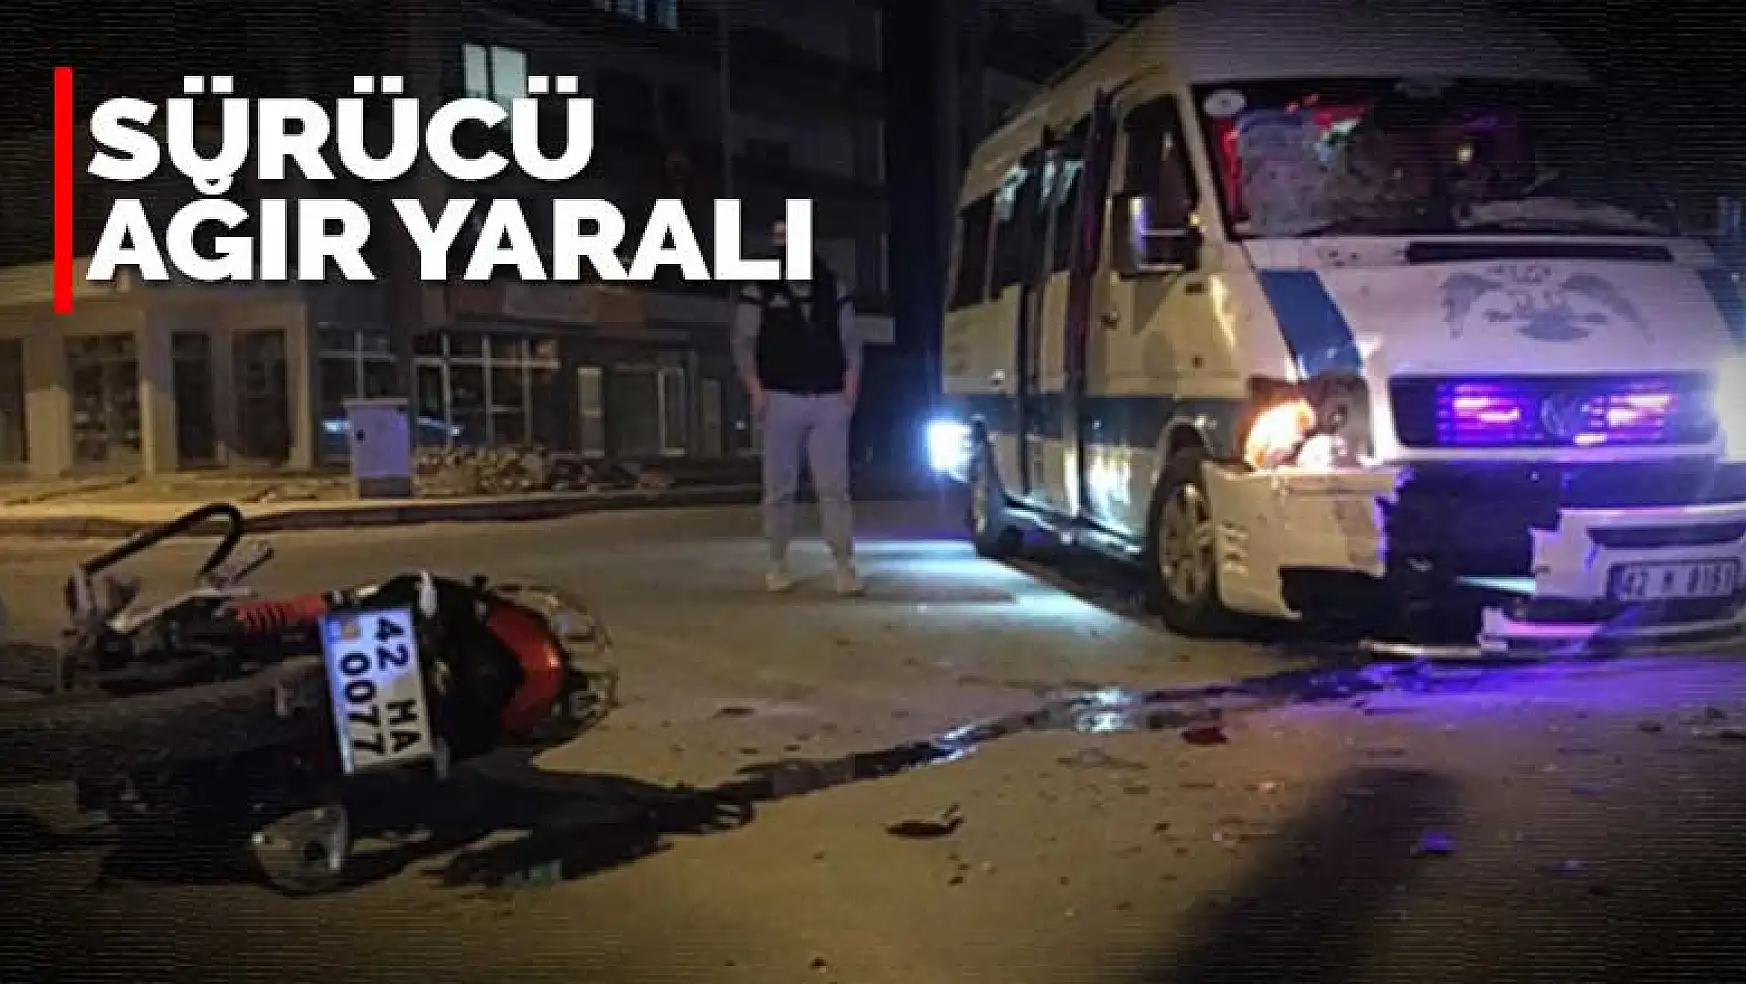 Konya'da motosiklet ile minibüs çarpıştı: 1 ağır yaralı